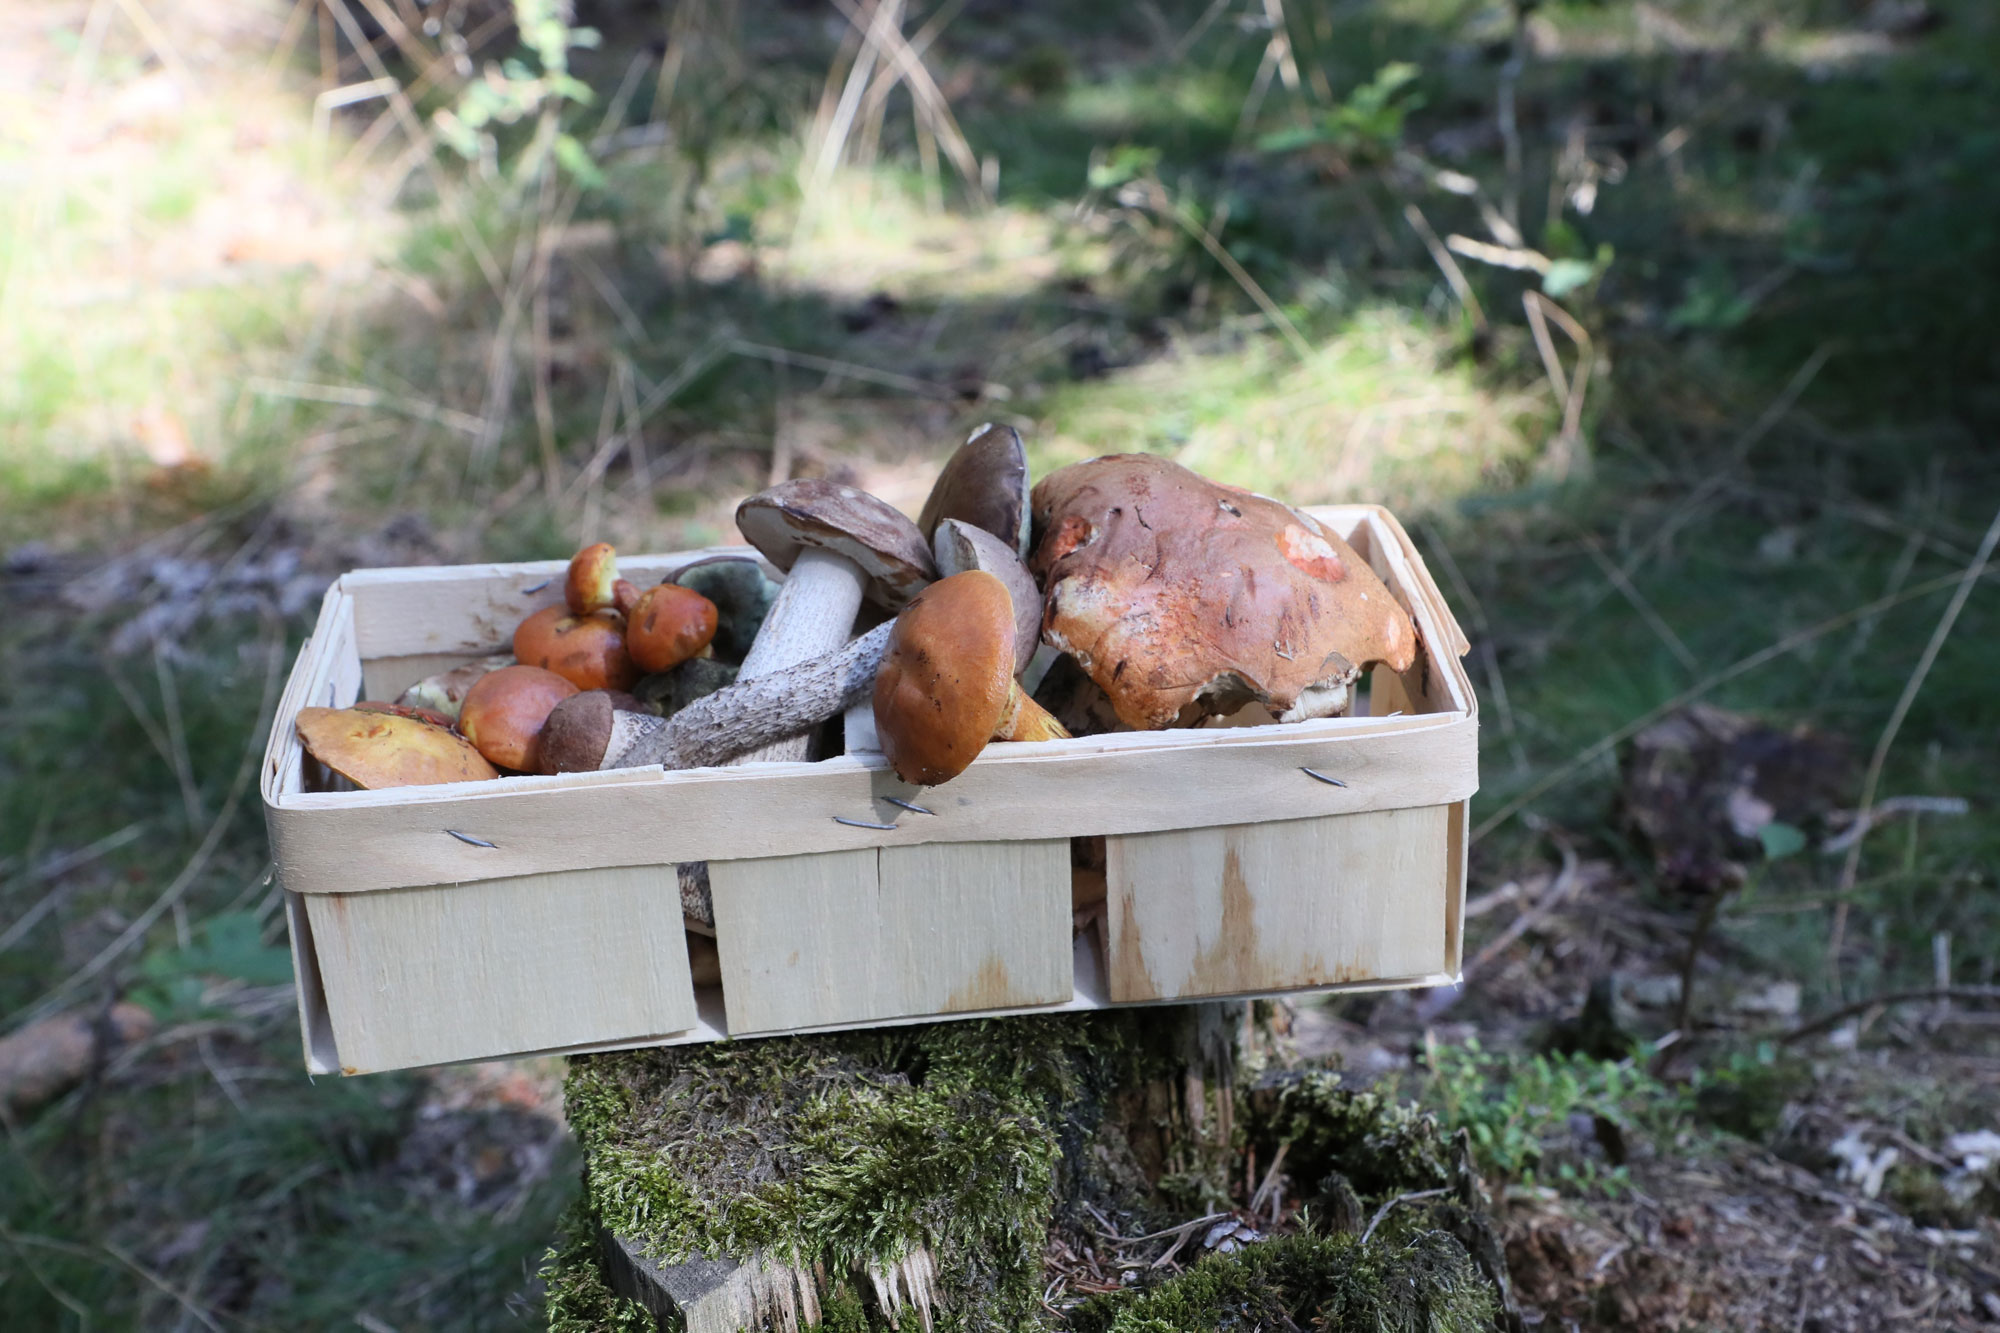 Mushroom Season in Germany